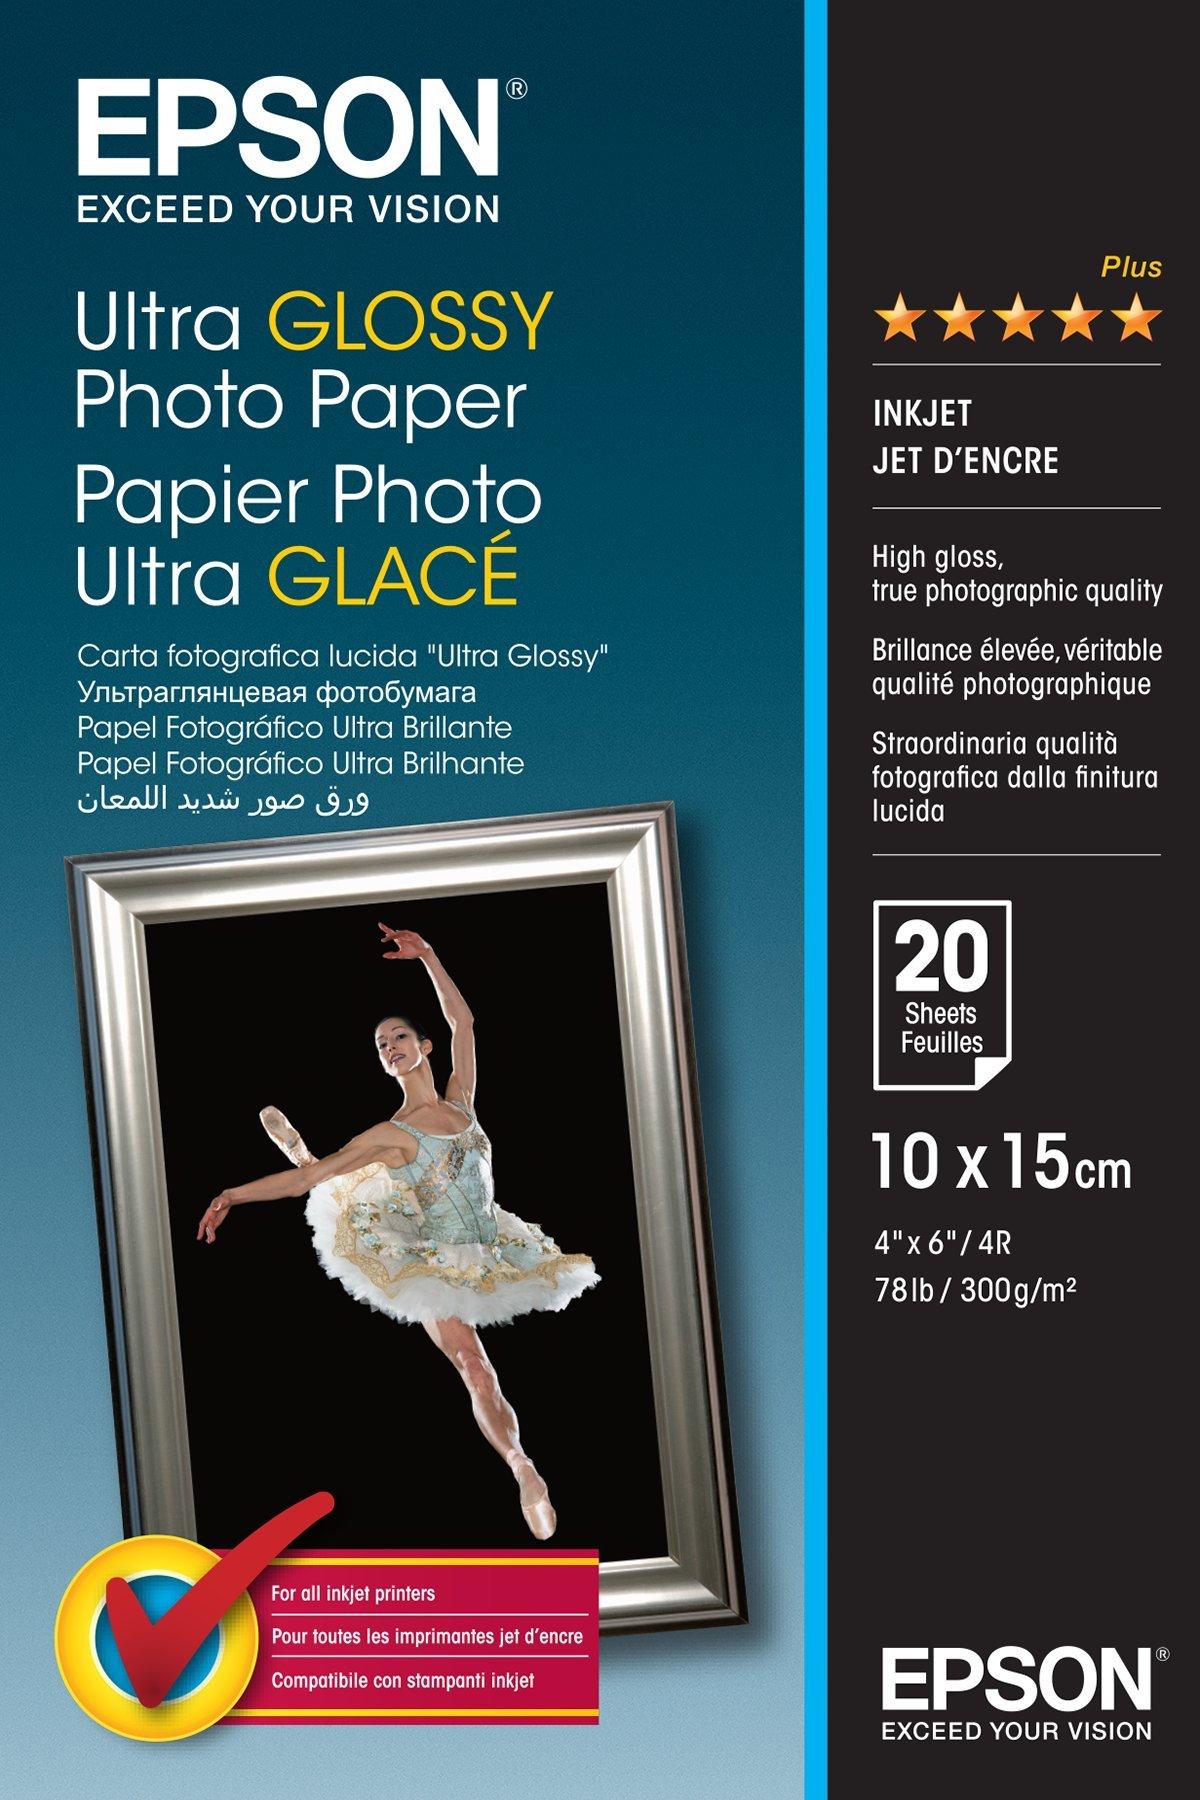 Ultra Glossy Photo Paper - 10x15cm - 20 Fogli, Carte e Supporti, Inchiostri & Carta, Prodotti